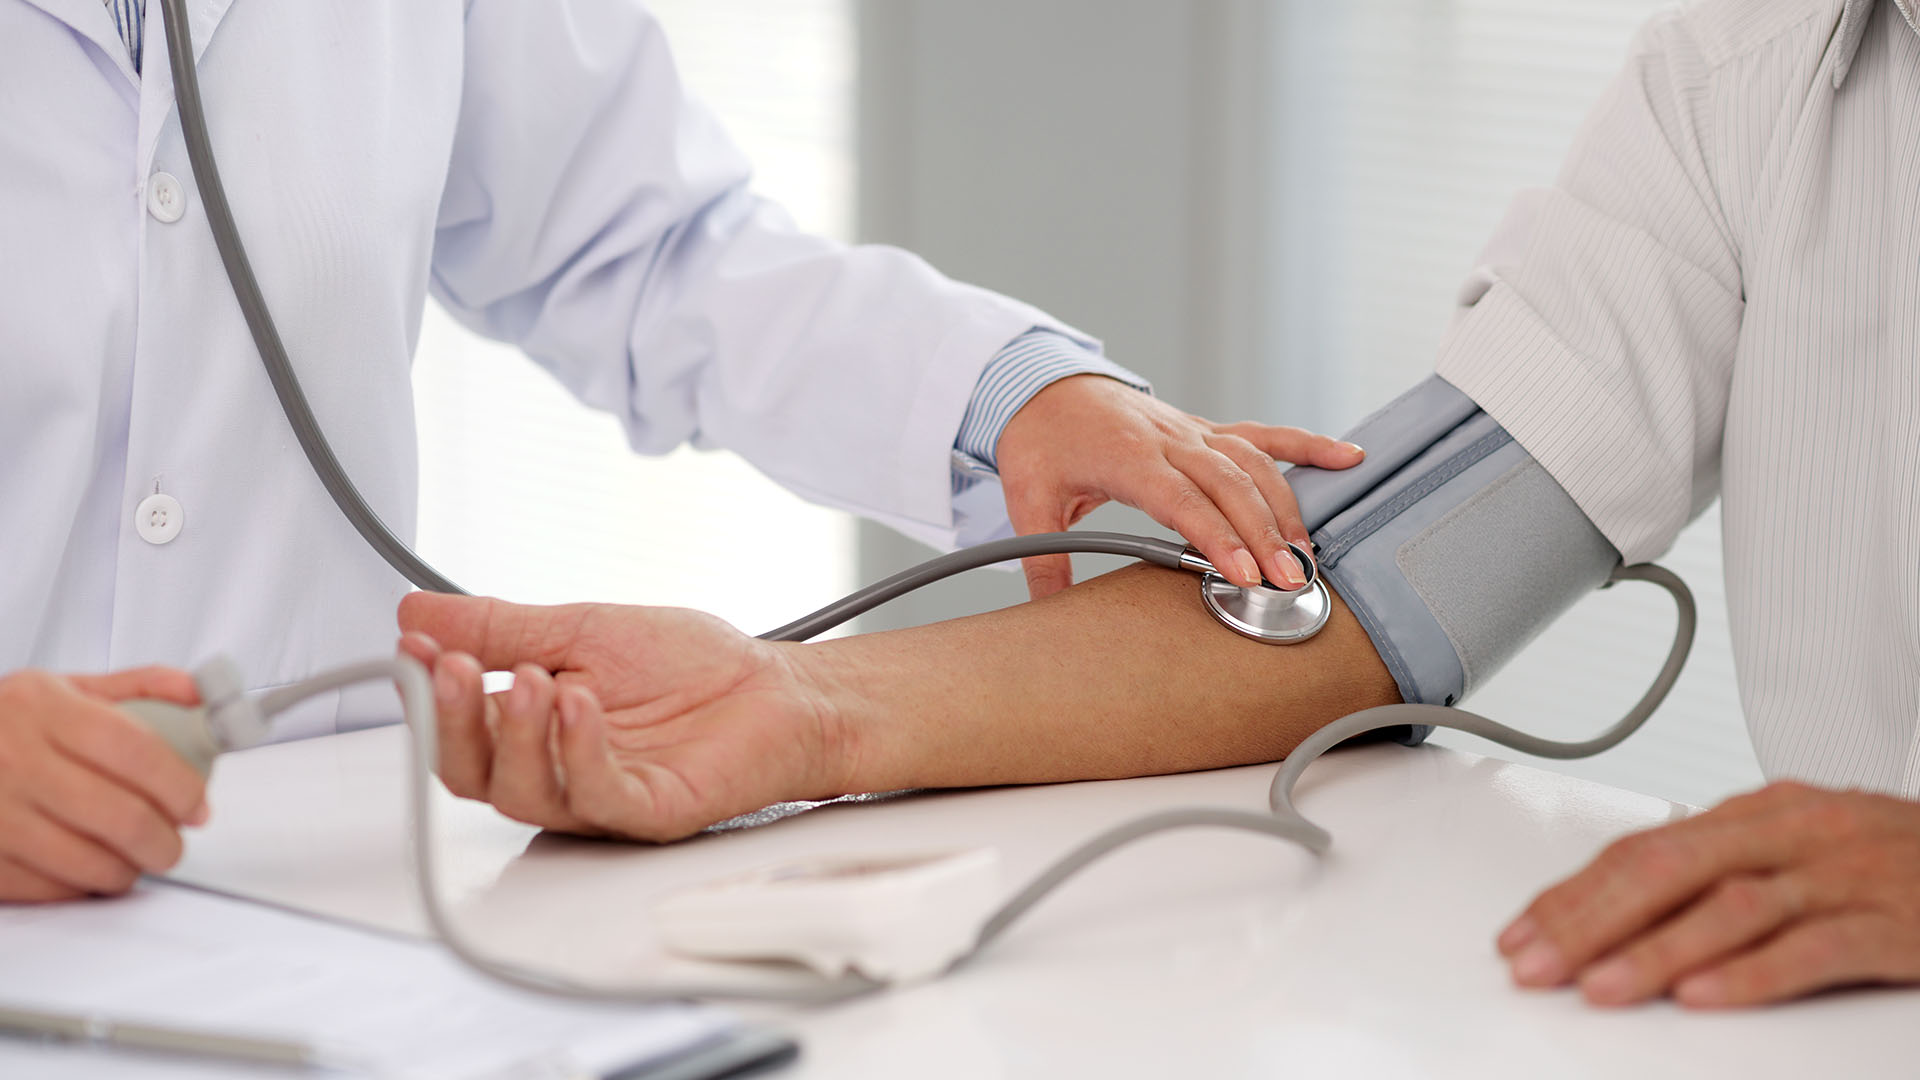 En los casos en los que la hipertensión esté diagnosticada, se deben hacer chequeos frecuentes porque a veces la medicación puede no ser  la adecuada y se debe ajustar (Getty)